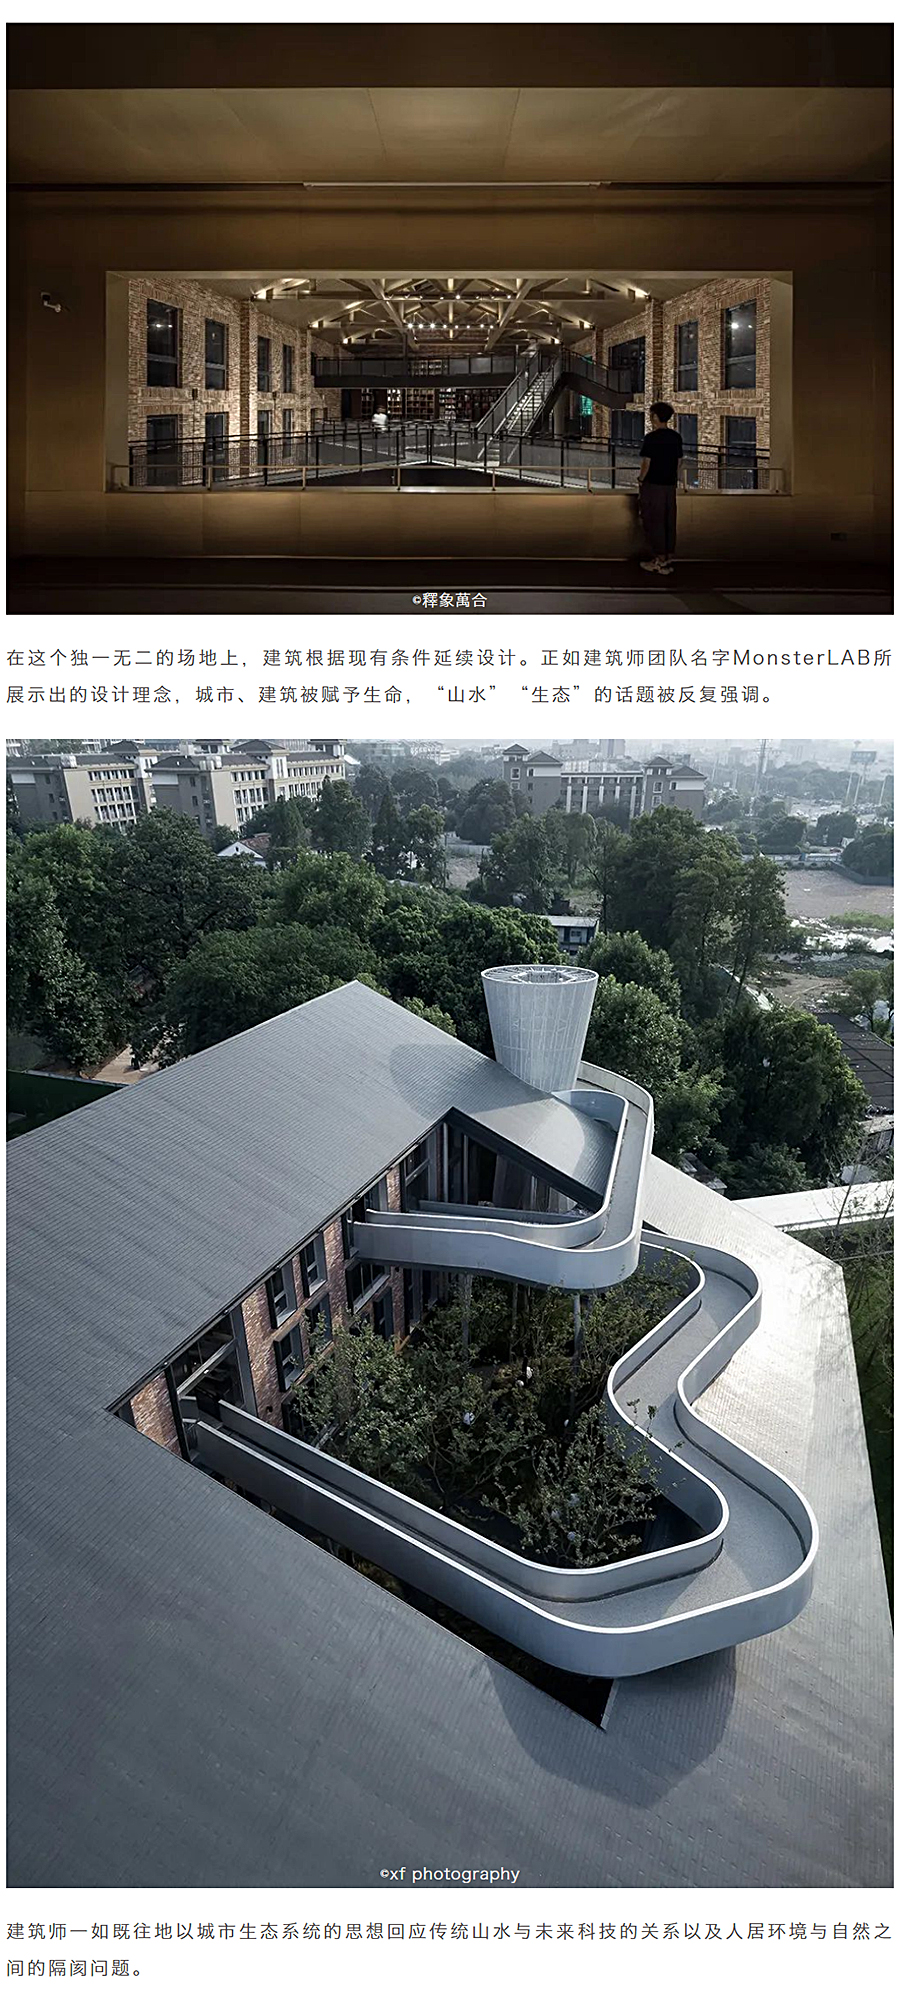 一座建筑投影一方山水-_-金华山嘴头未来社区中心_0023_图层-24.jpg